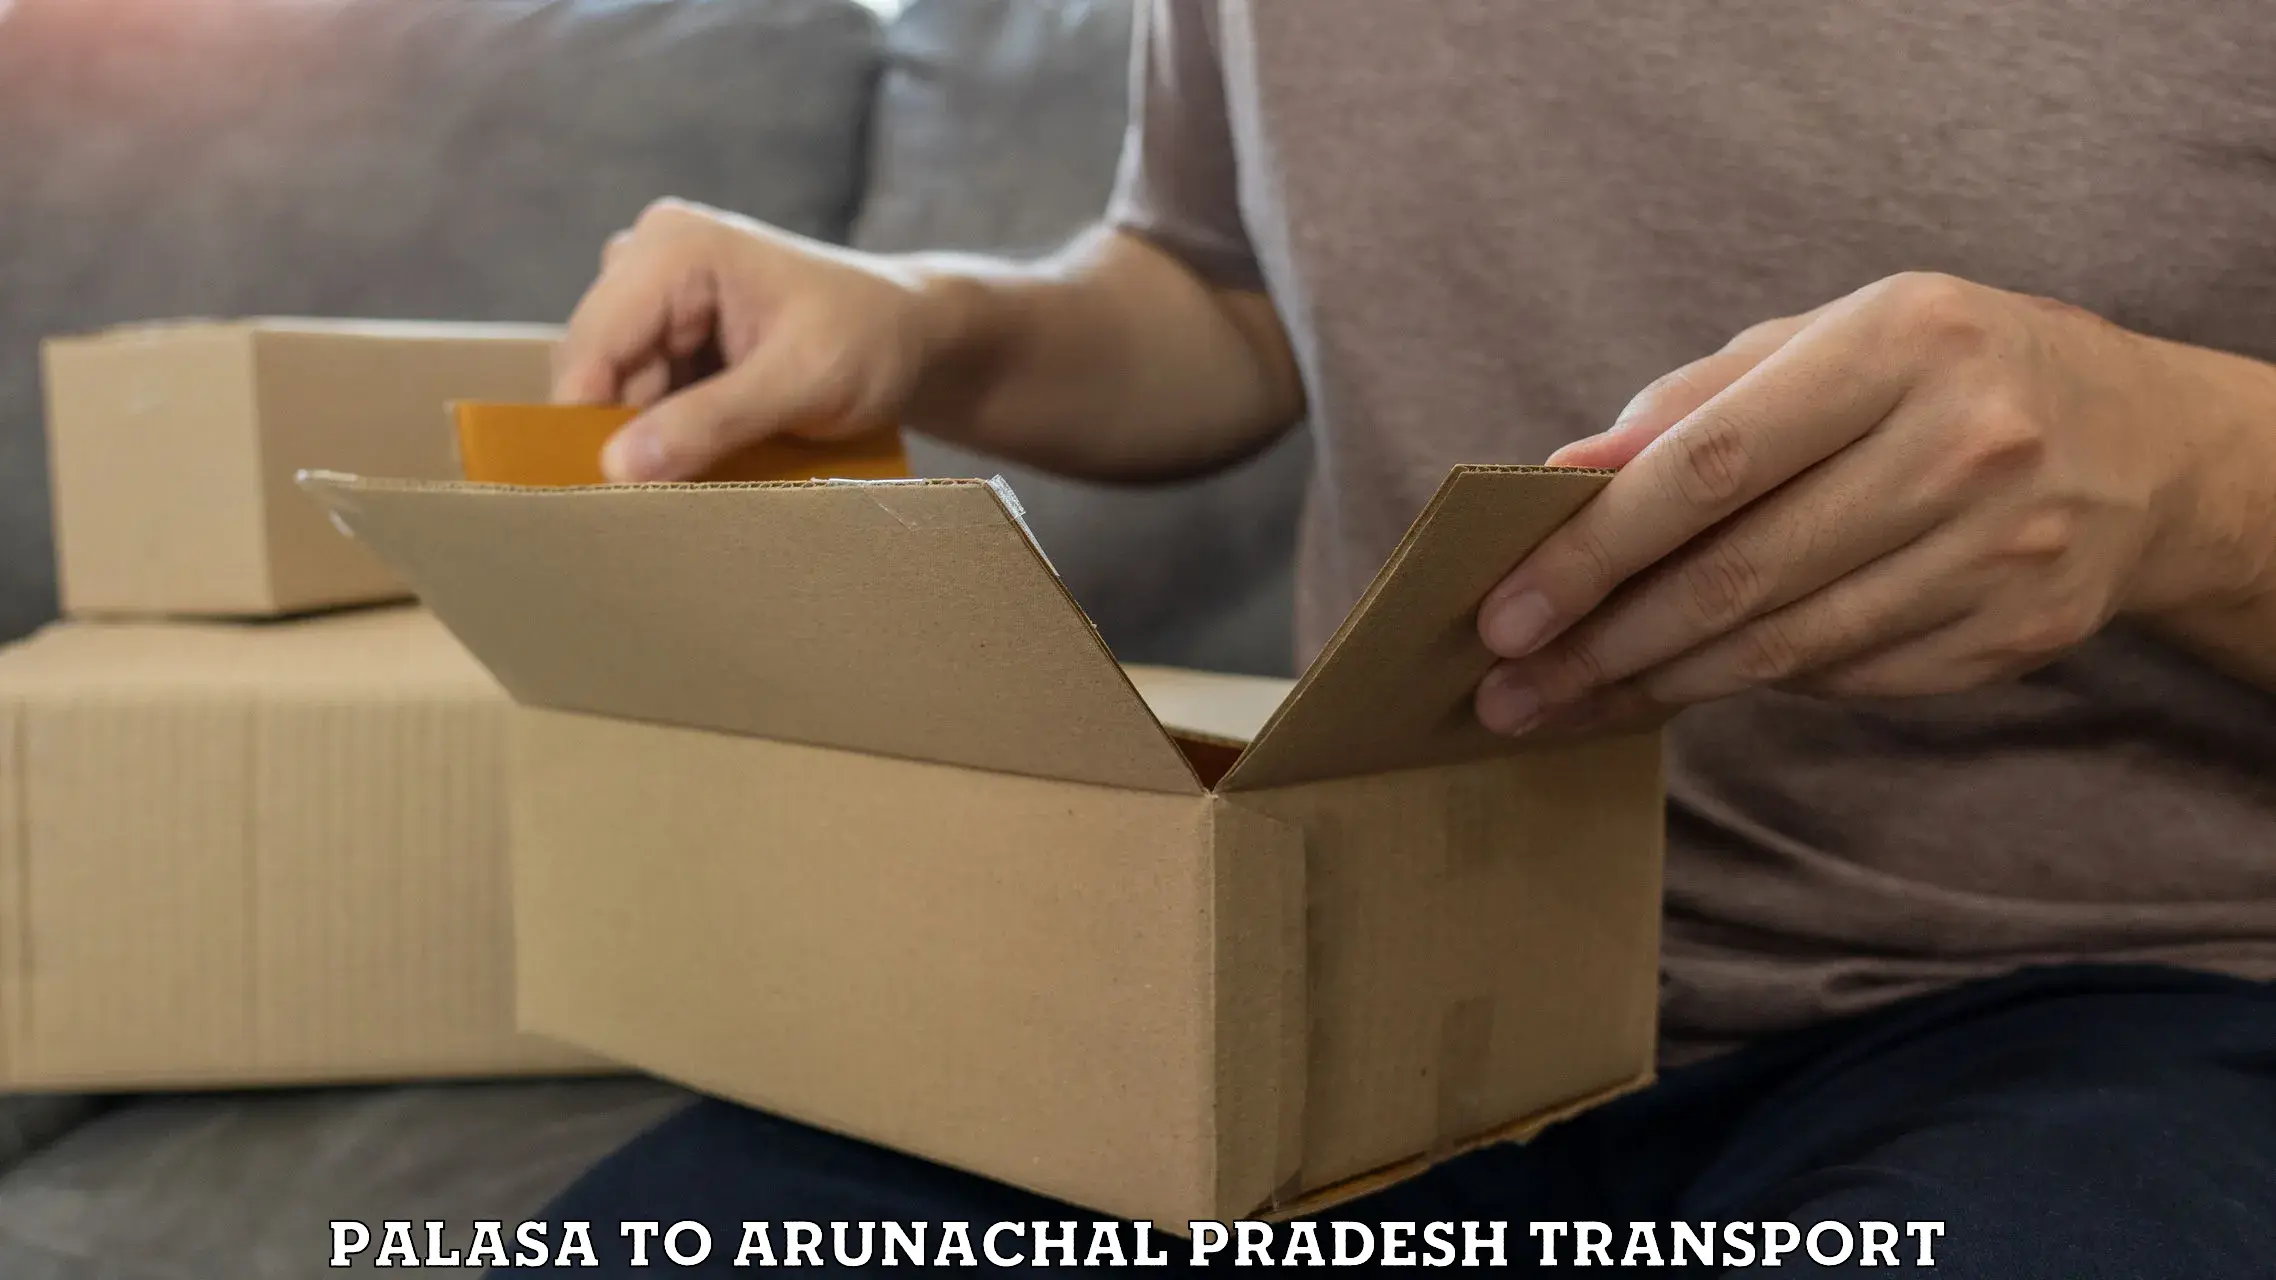 Nearby transport service Palasa to Arunachal Pradesh